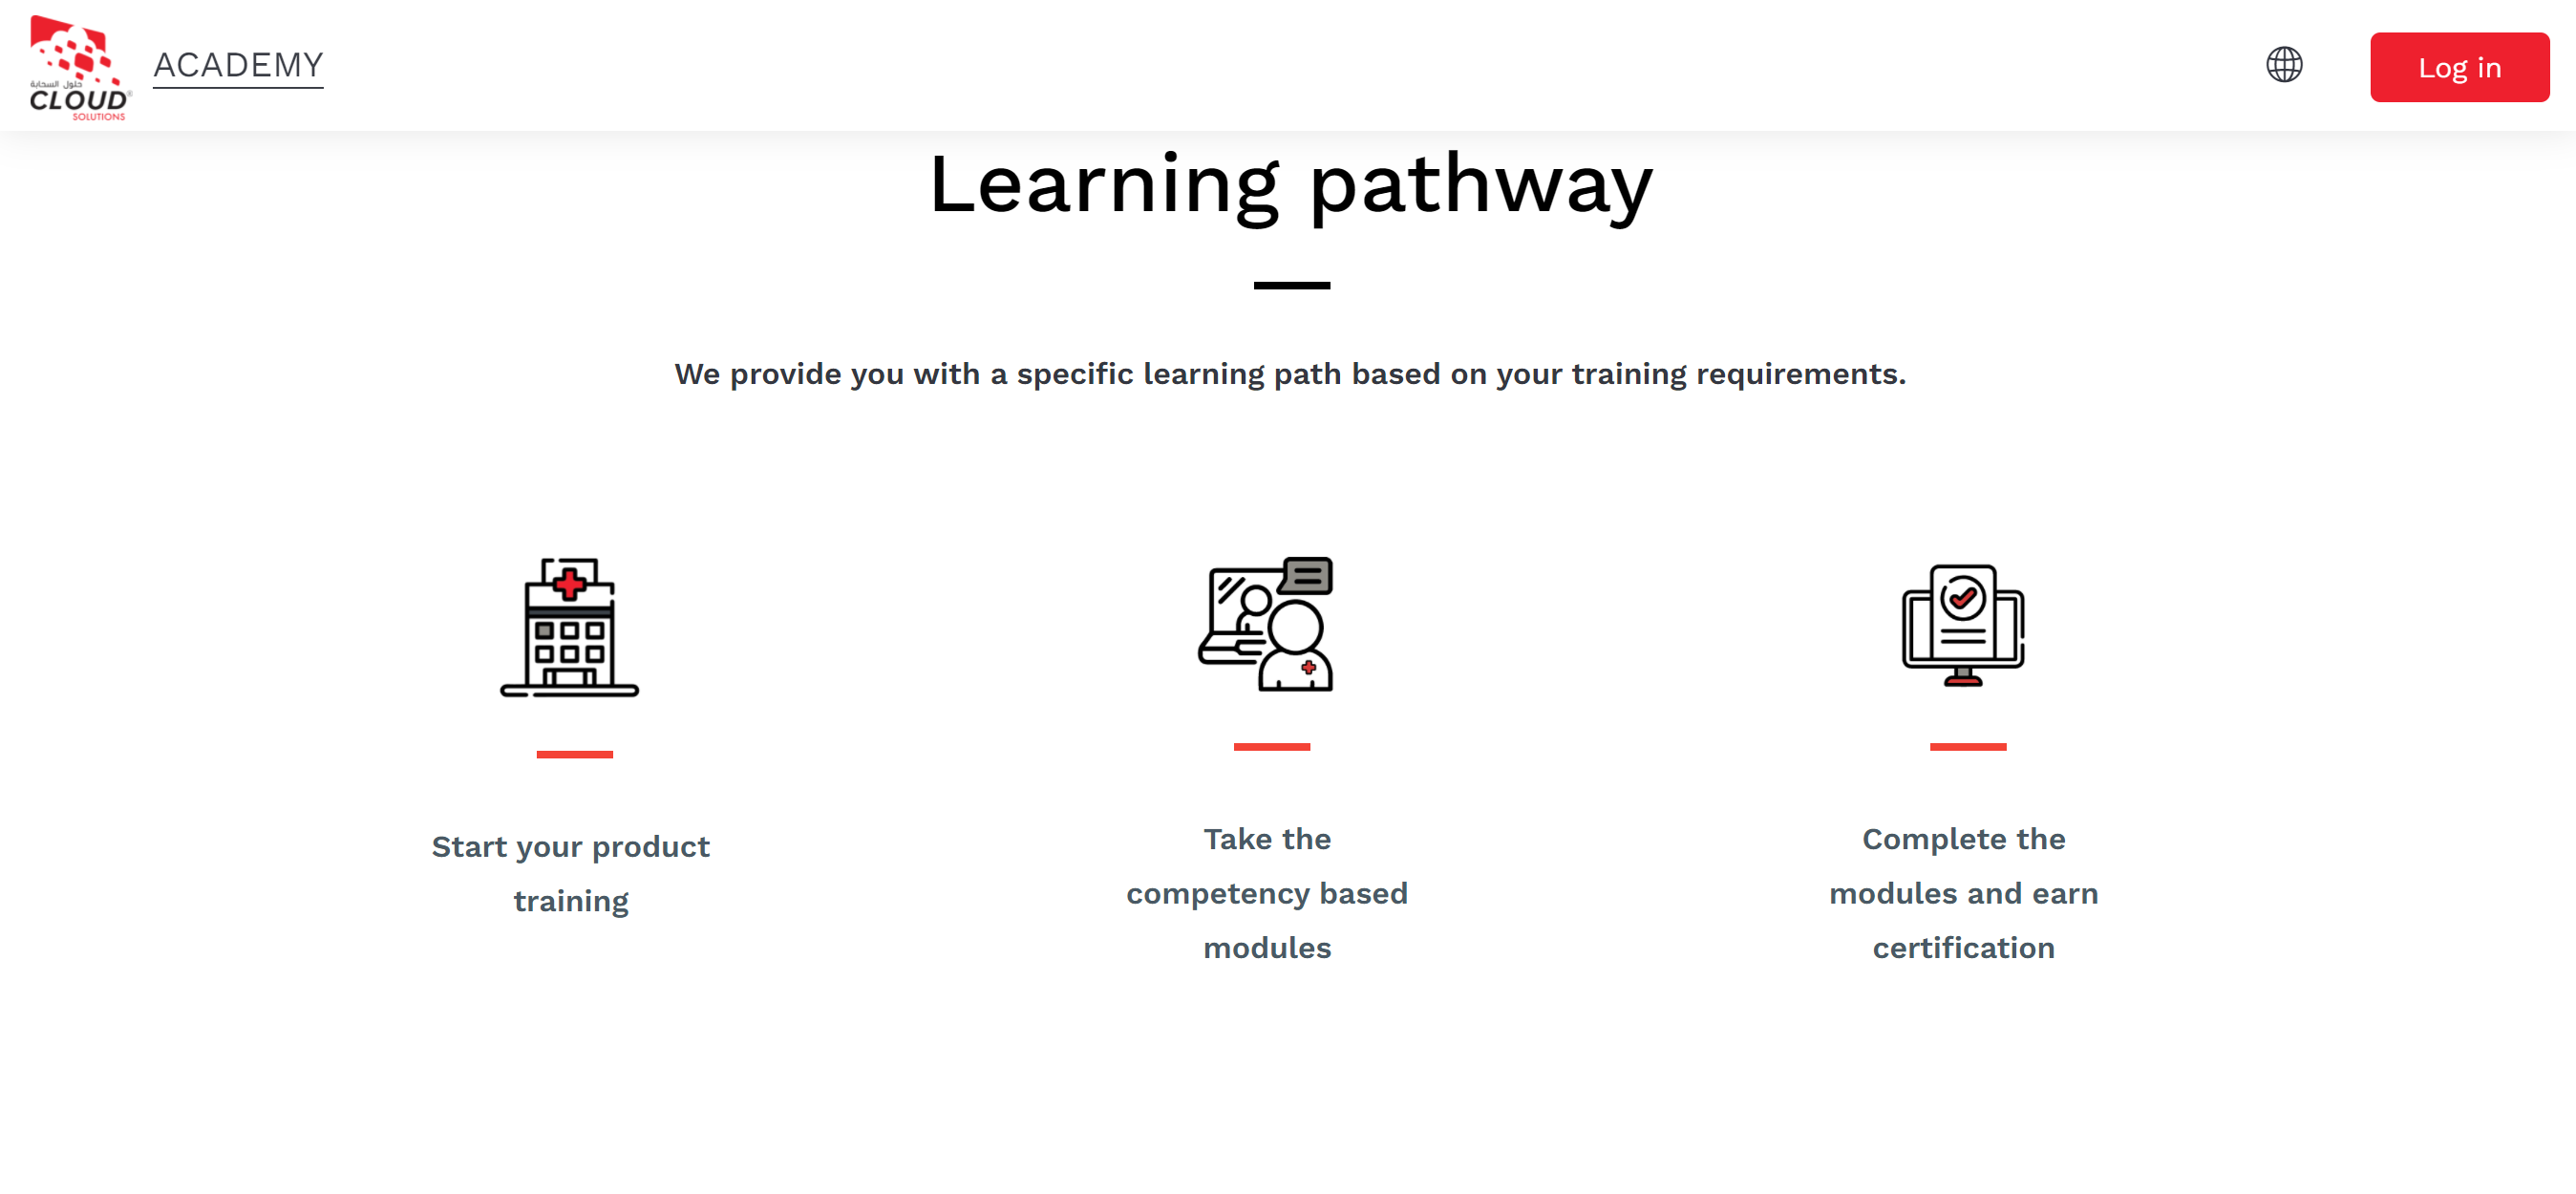 Le site Moodle de Cloud Solutions Support présentant 3 parcours d'apprentissage disponibles pour leurs utilisateurs, en fonction de leurs besoins de formation : Commencez votre formation produit ; Suivez les modules basés sur les compétences ; Complétez les modules et obtenez une certification